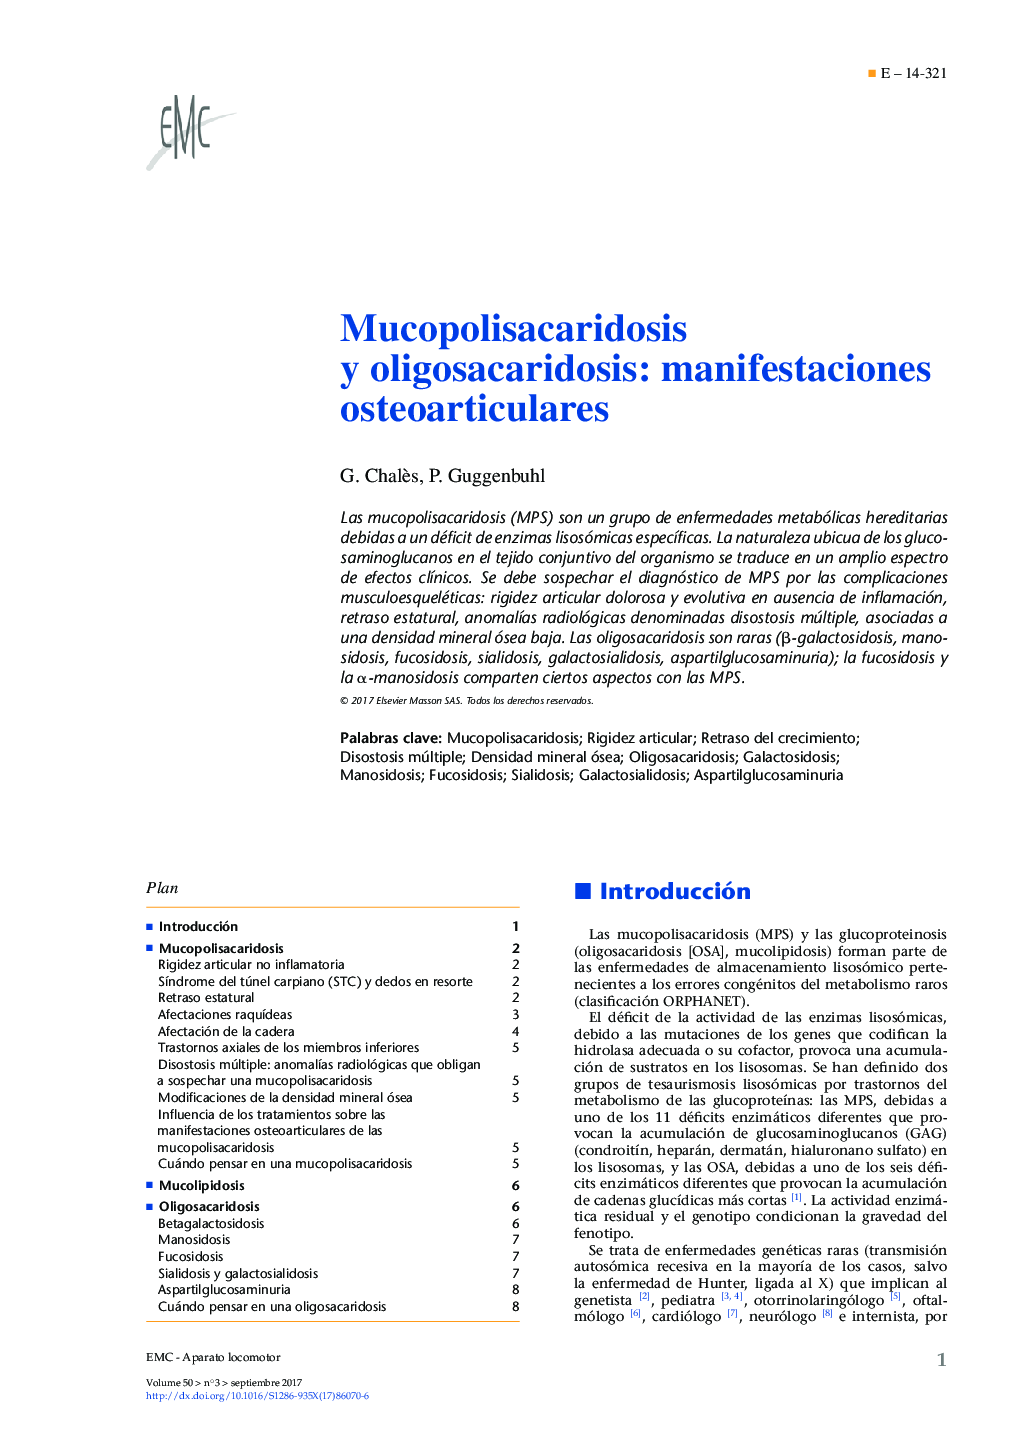 Mucopolisacaridosis y oligosacaridosis: manifestaciones osteoarticulares